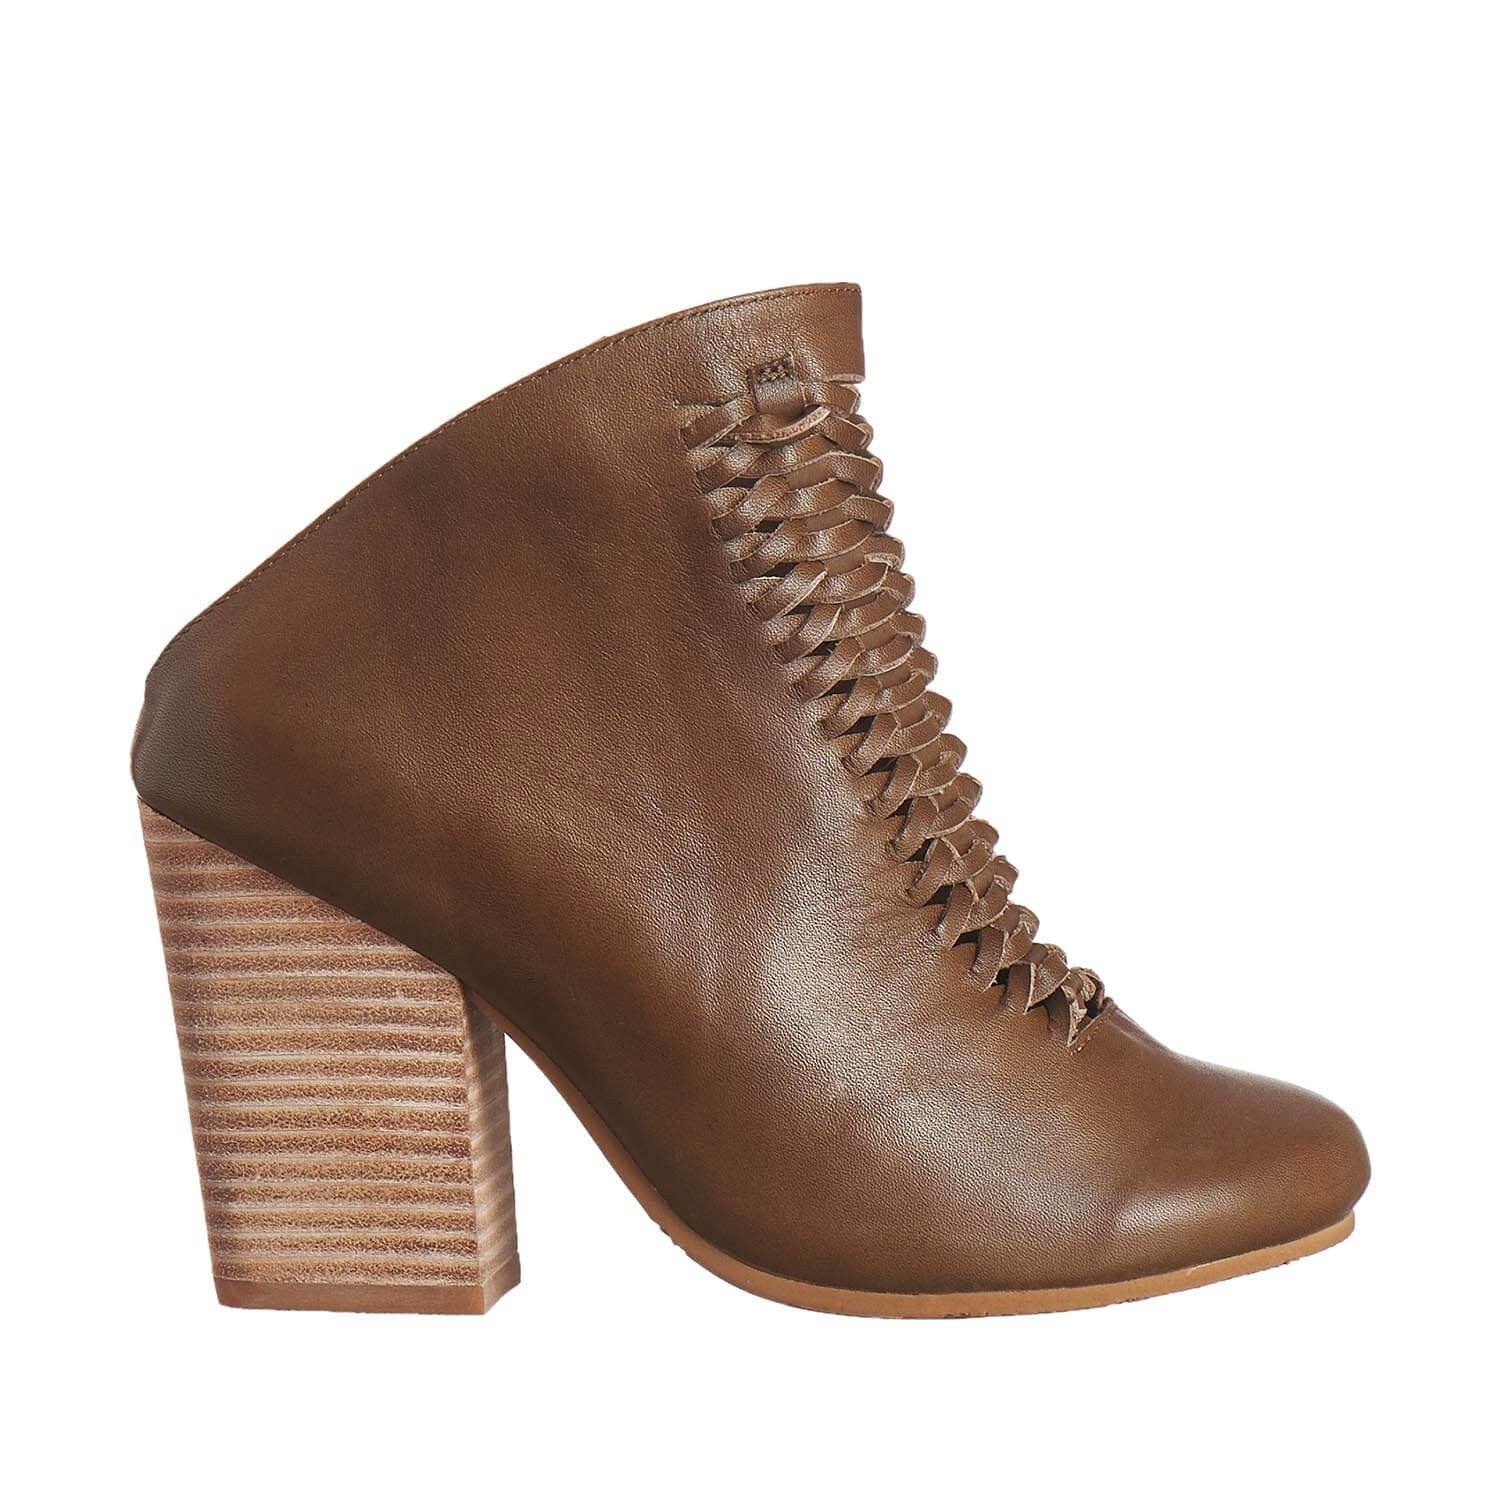 Hella Heels UK | Stripper Shoes | Pole Dance Heels | Online Shopping